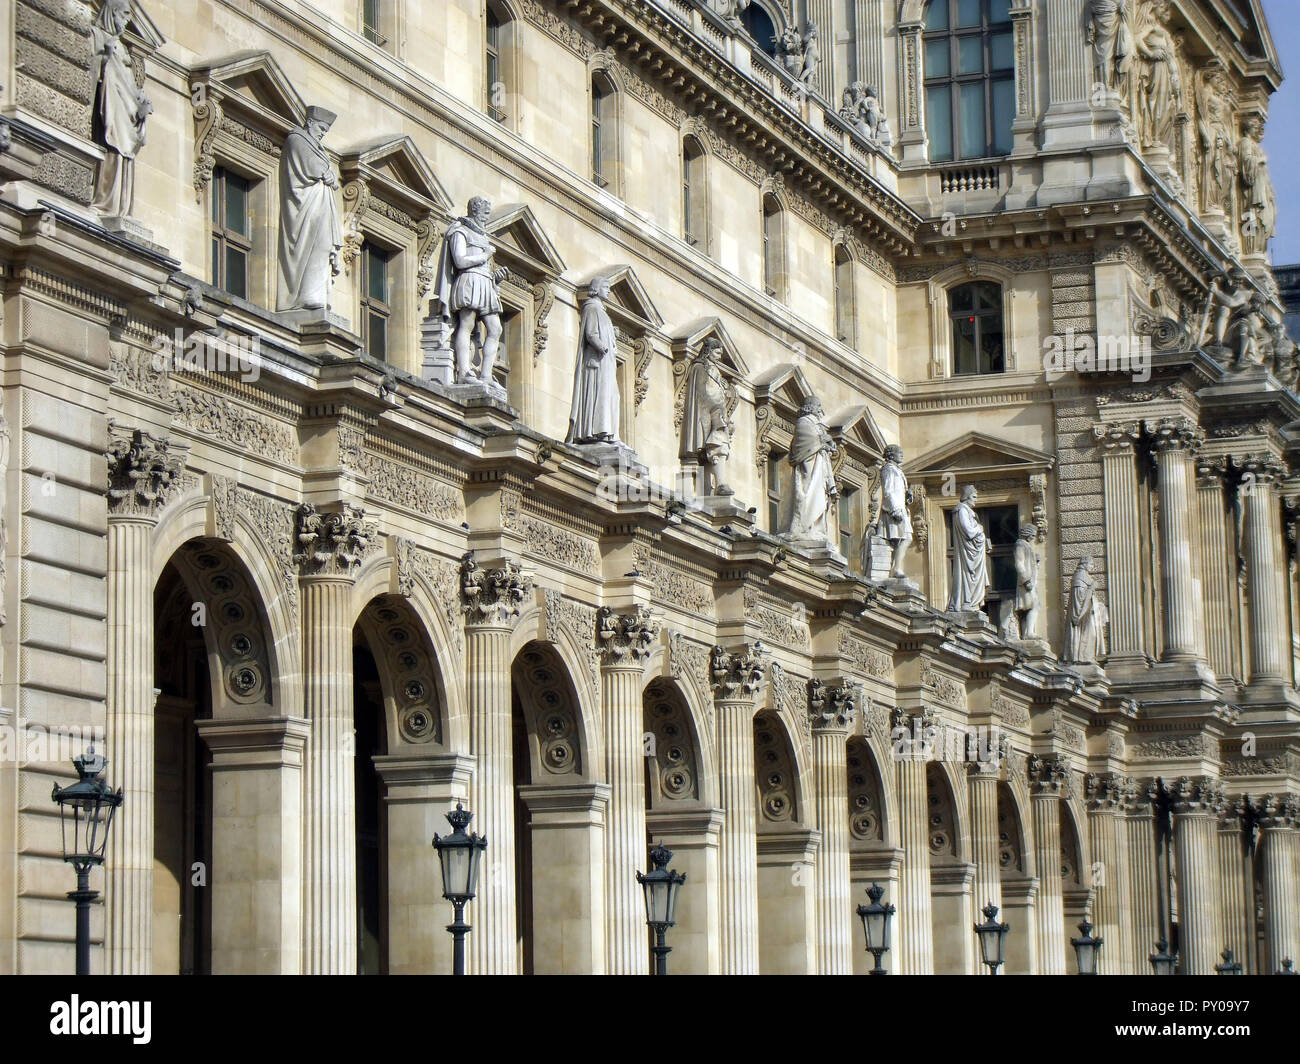 Parte de la Fachada del museo del Louvre mostrando impresionantes detalles arquitectónicos, diseños, estatuas y pilares que ha atraído a miles y miles de turistas, visitantes, turistas y amantes del arte a la creación, en París, cada año. Foto de stock